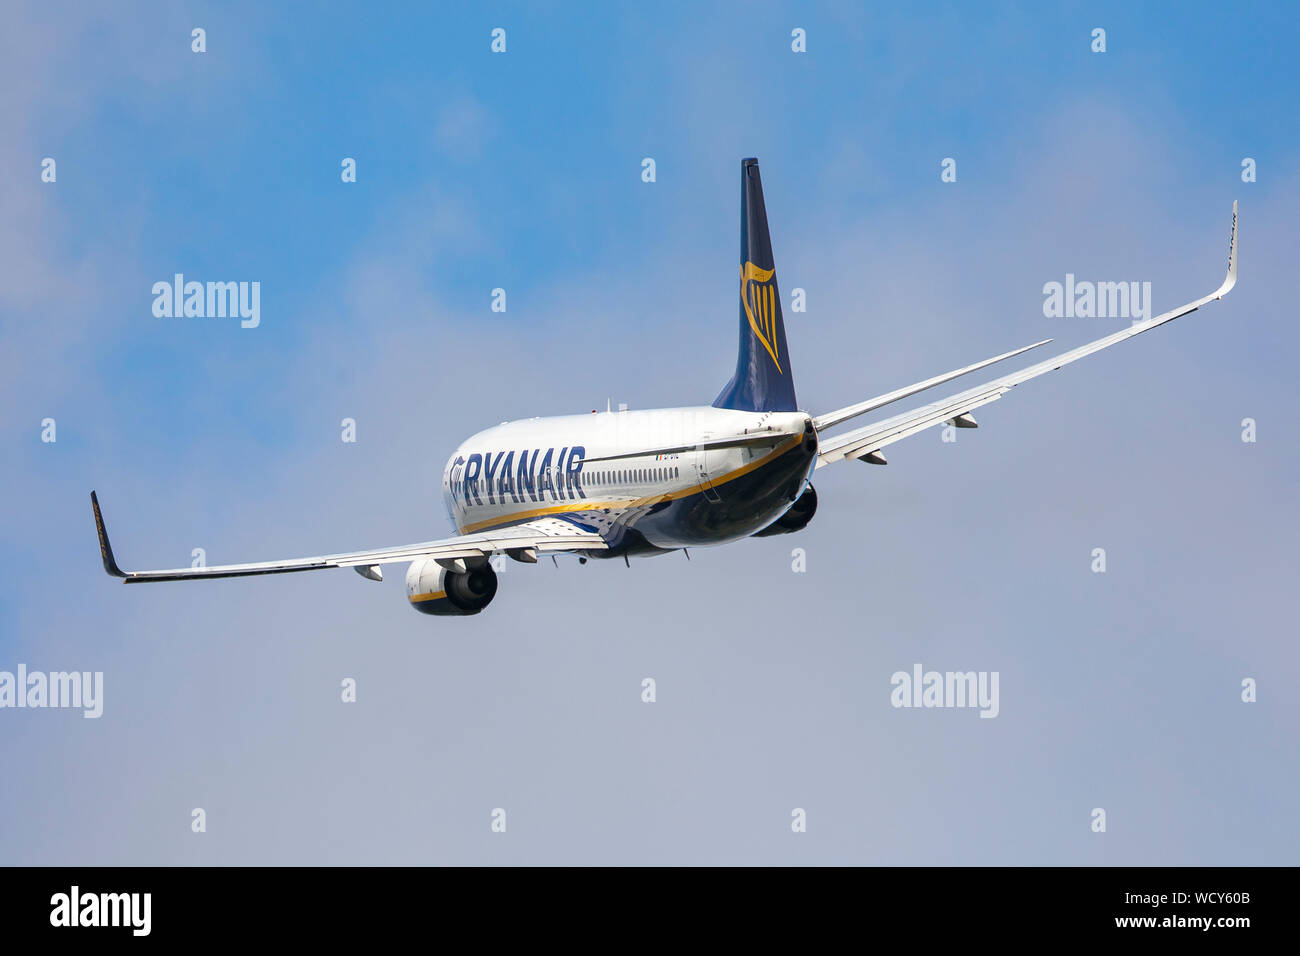 Ryanair Boeing 737 avions de transport de passagers, en vol, s'envoler à partir de l'appareil photo Banque D'Images